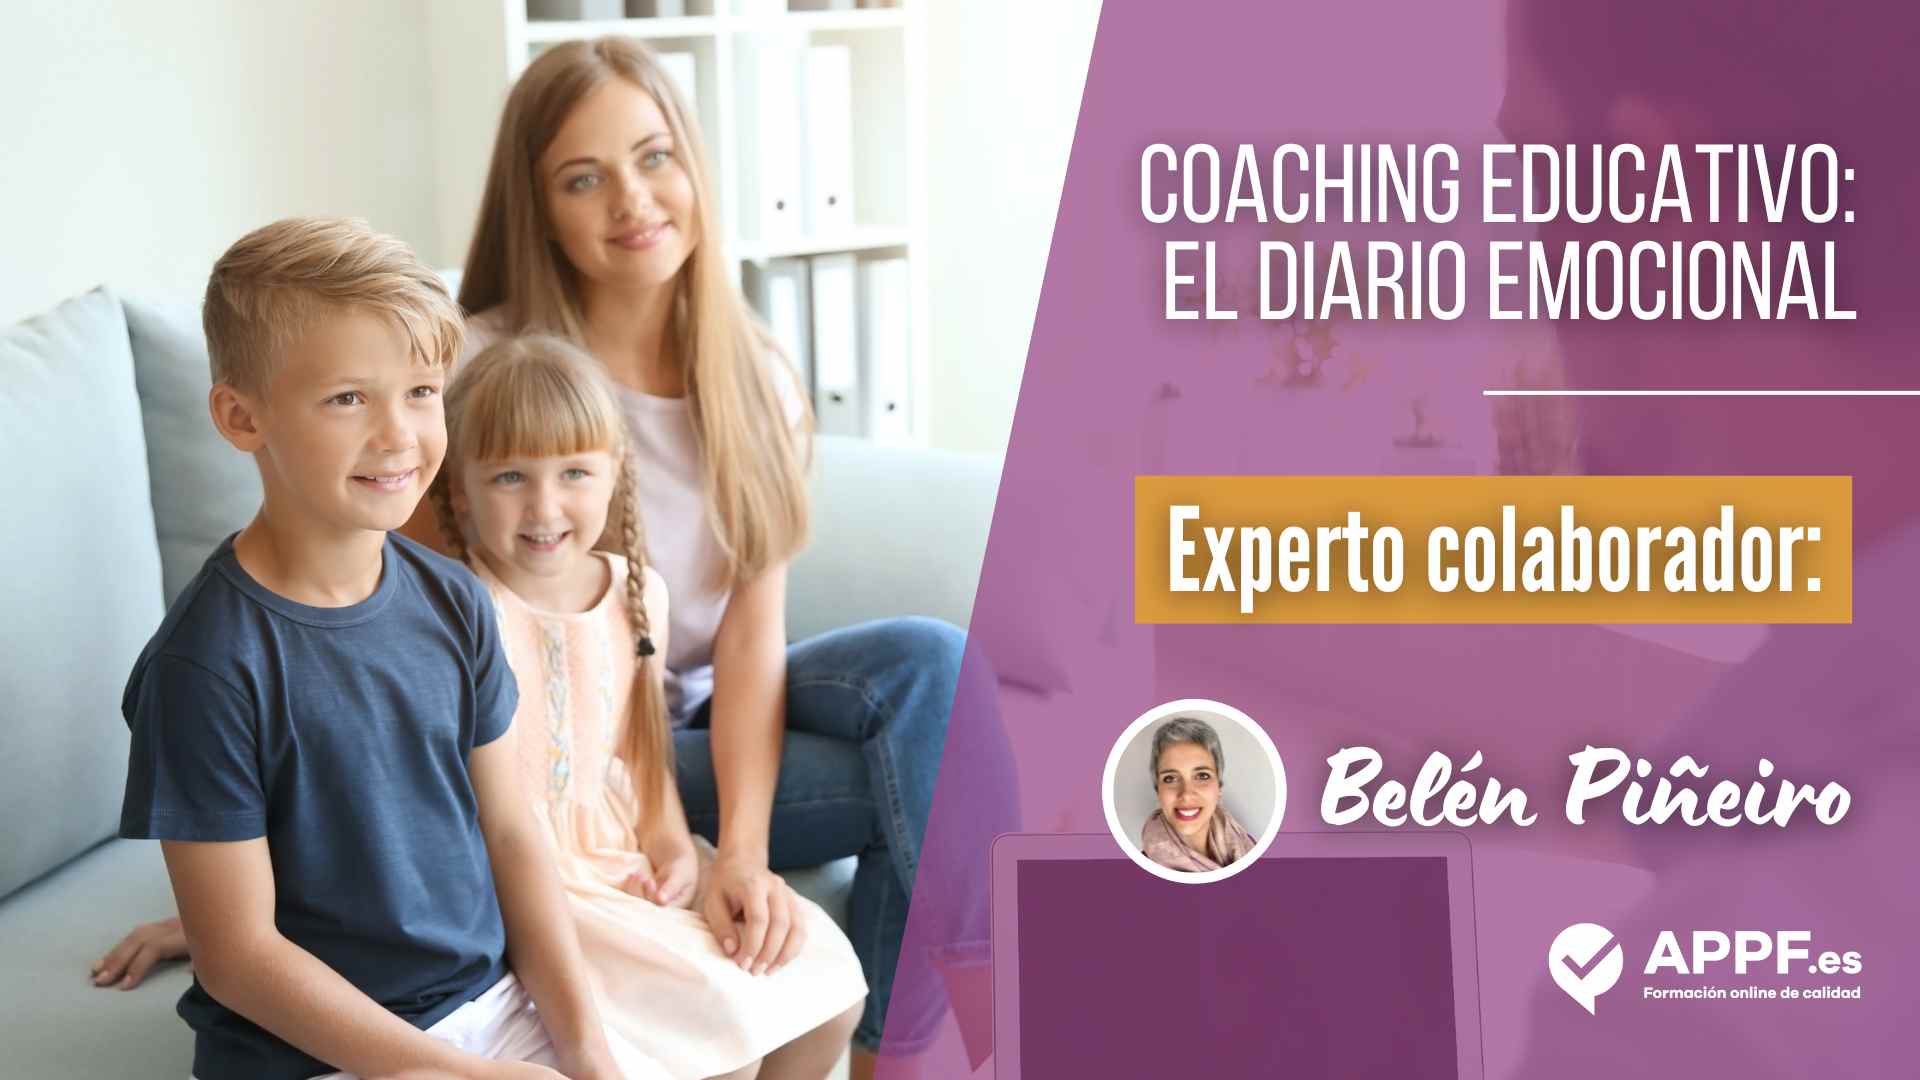 ¿Qué es el coaching educativo? ¿Y un diario emocional?